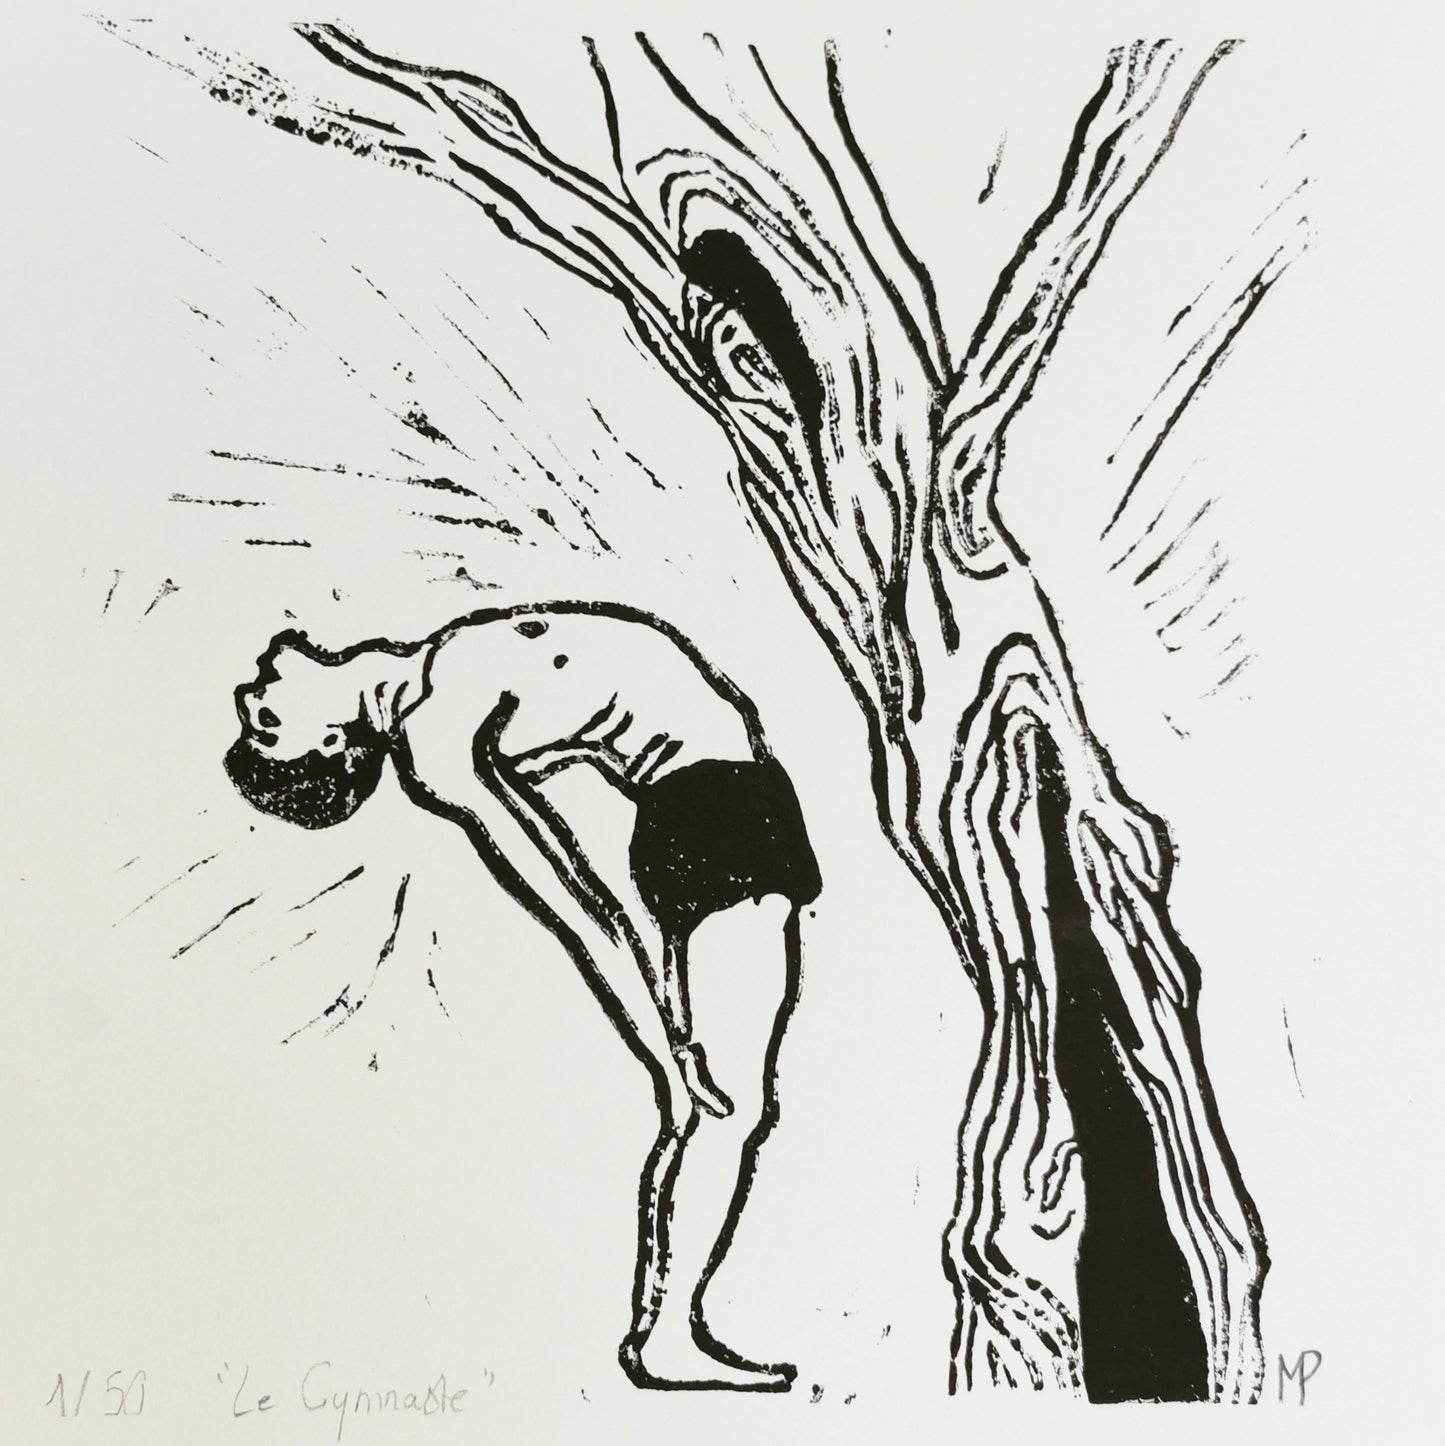 Linogravure - L'homme et l'arbre - " Le gymnaste"